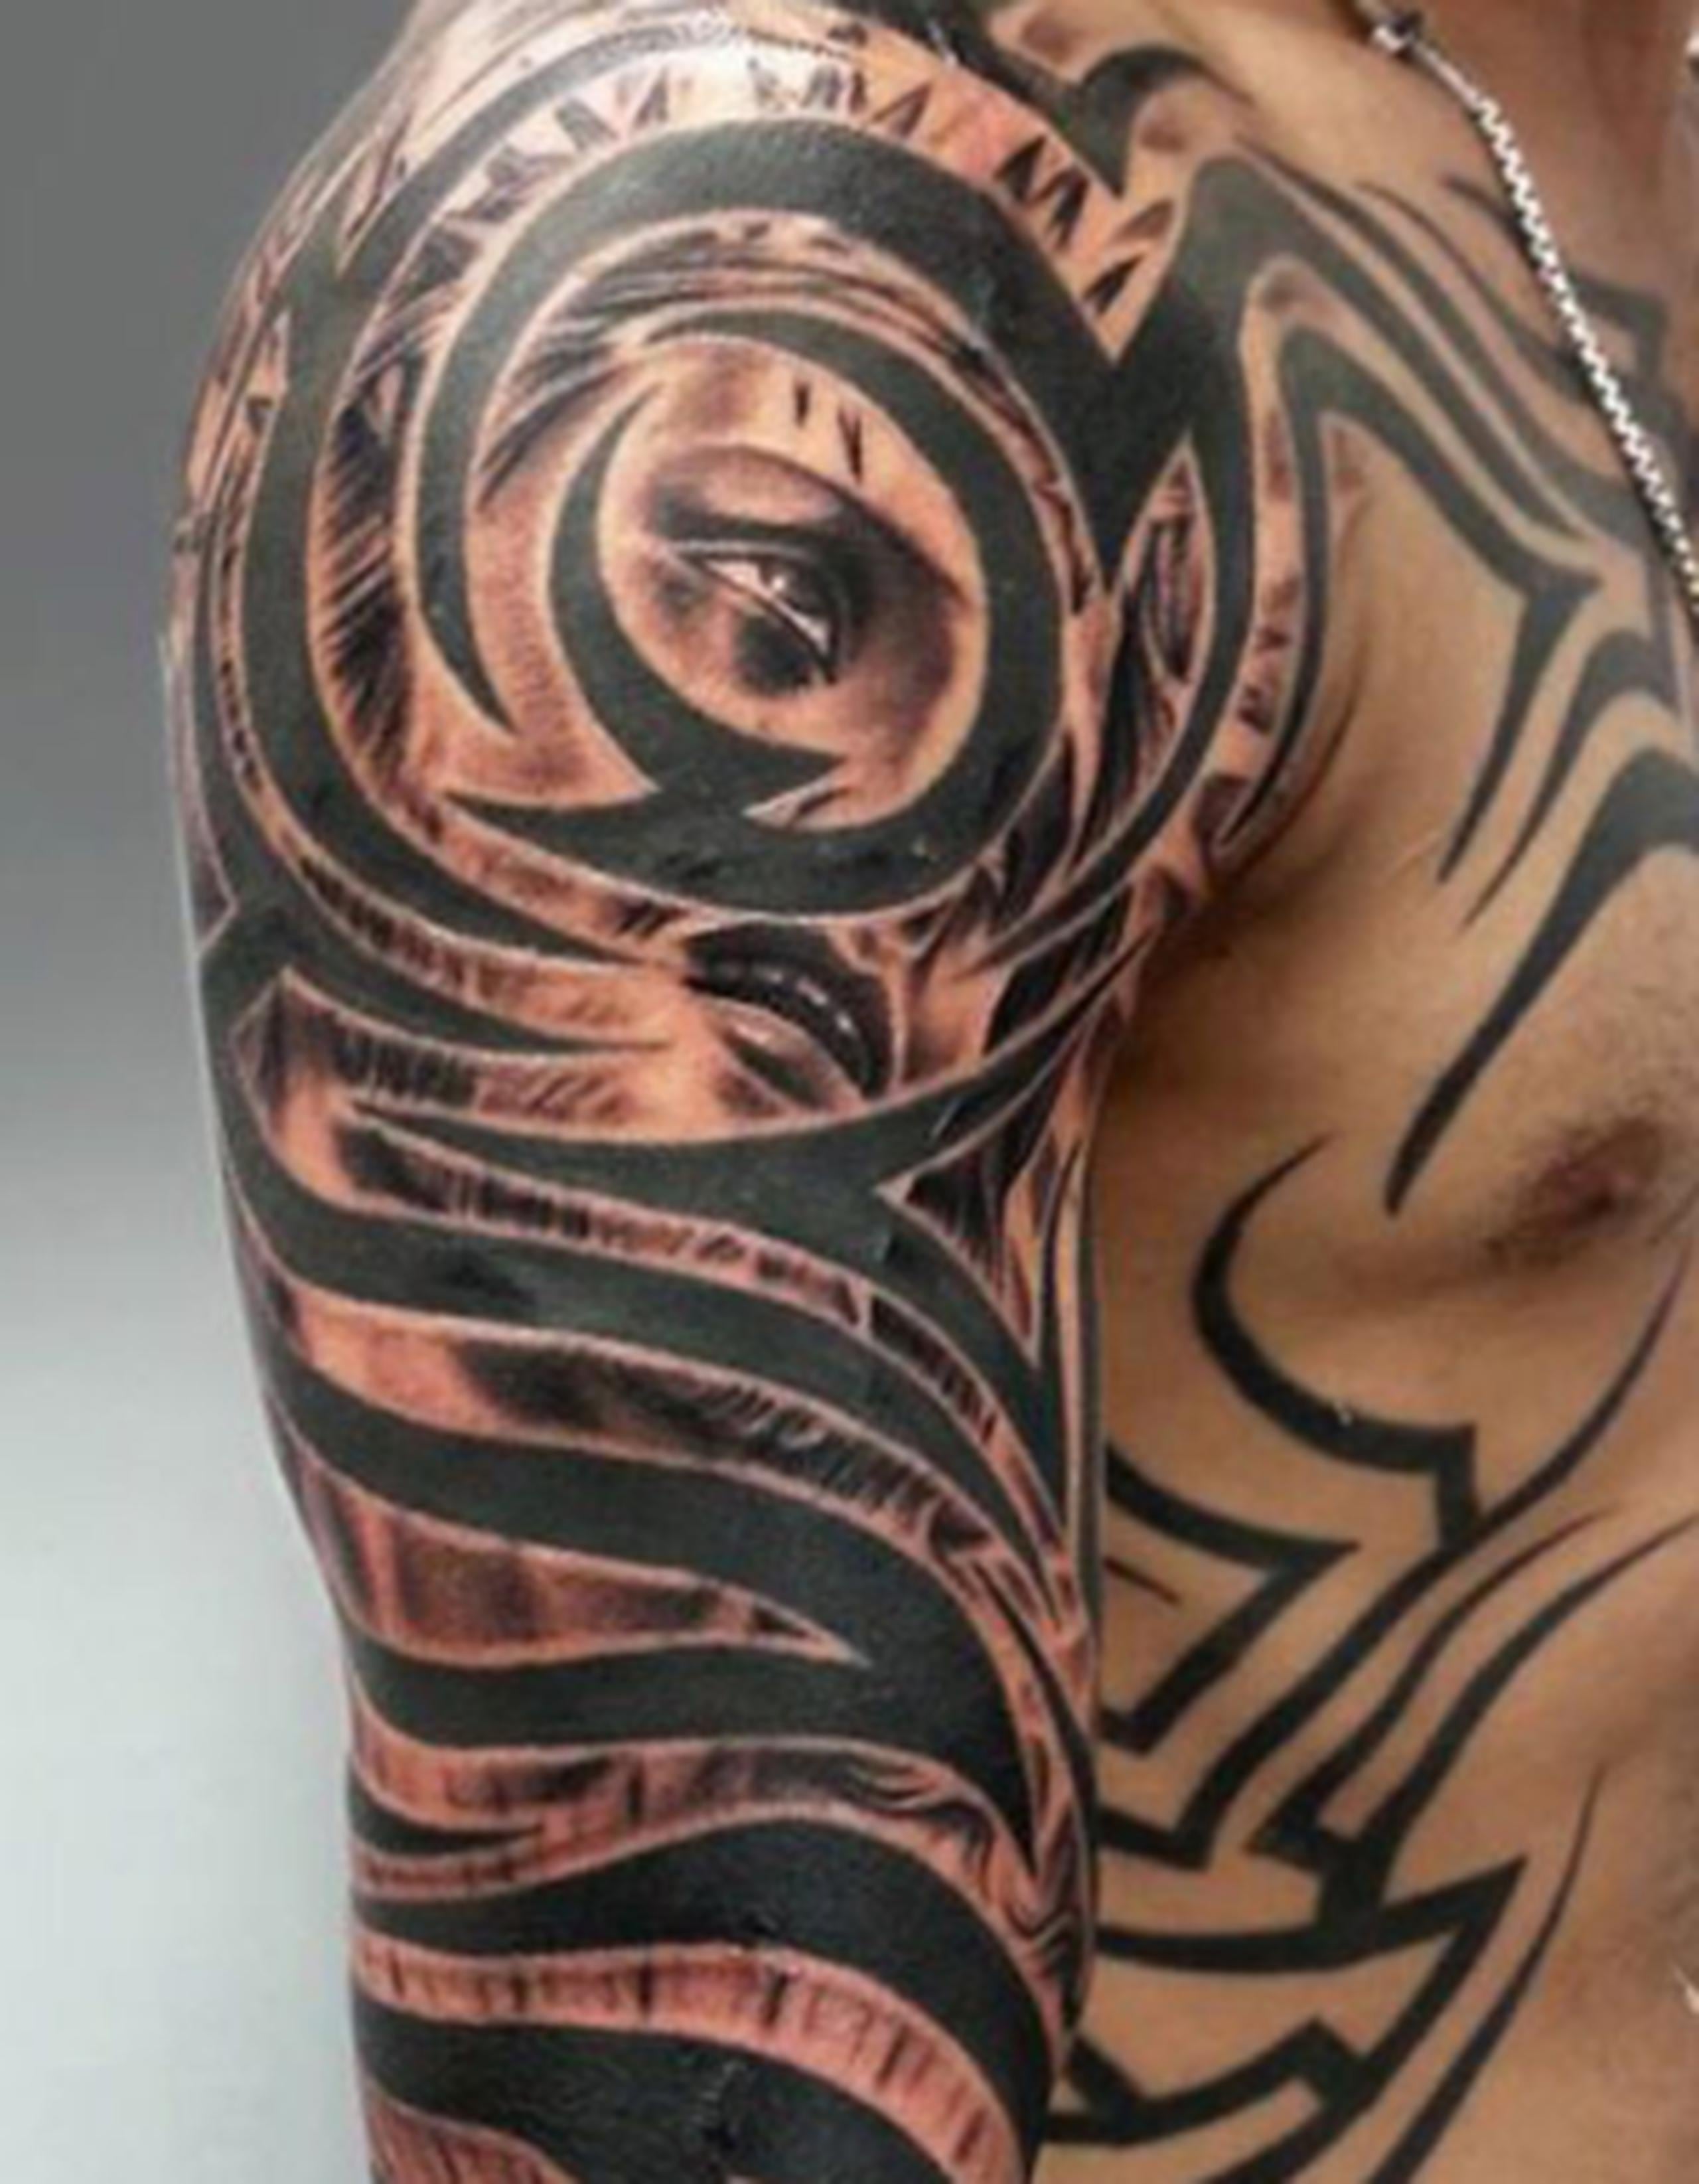 Esta no sería la primera ocasión que Cotto recurre al artista Juan Salgado, pues es el responsable de los tatuajes del brazo izquierdo del boxeador. (Suministrada)